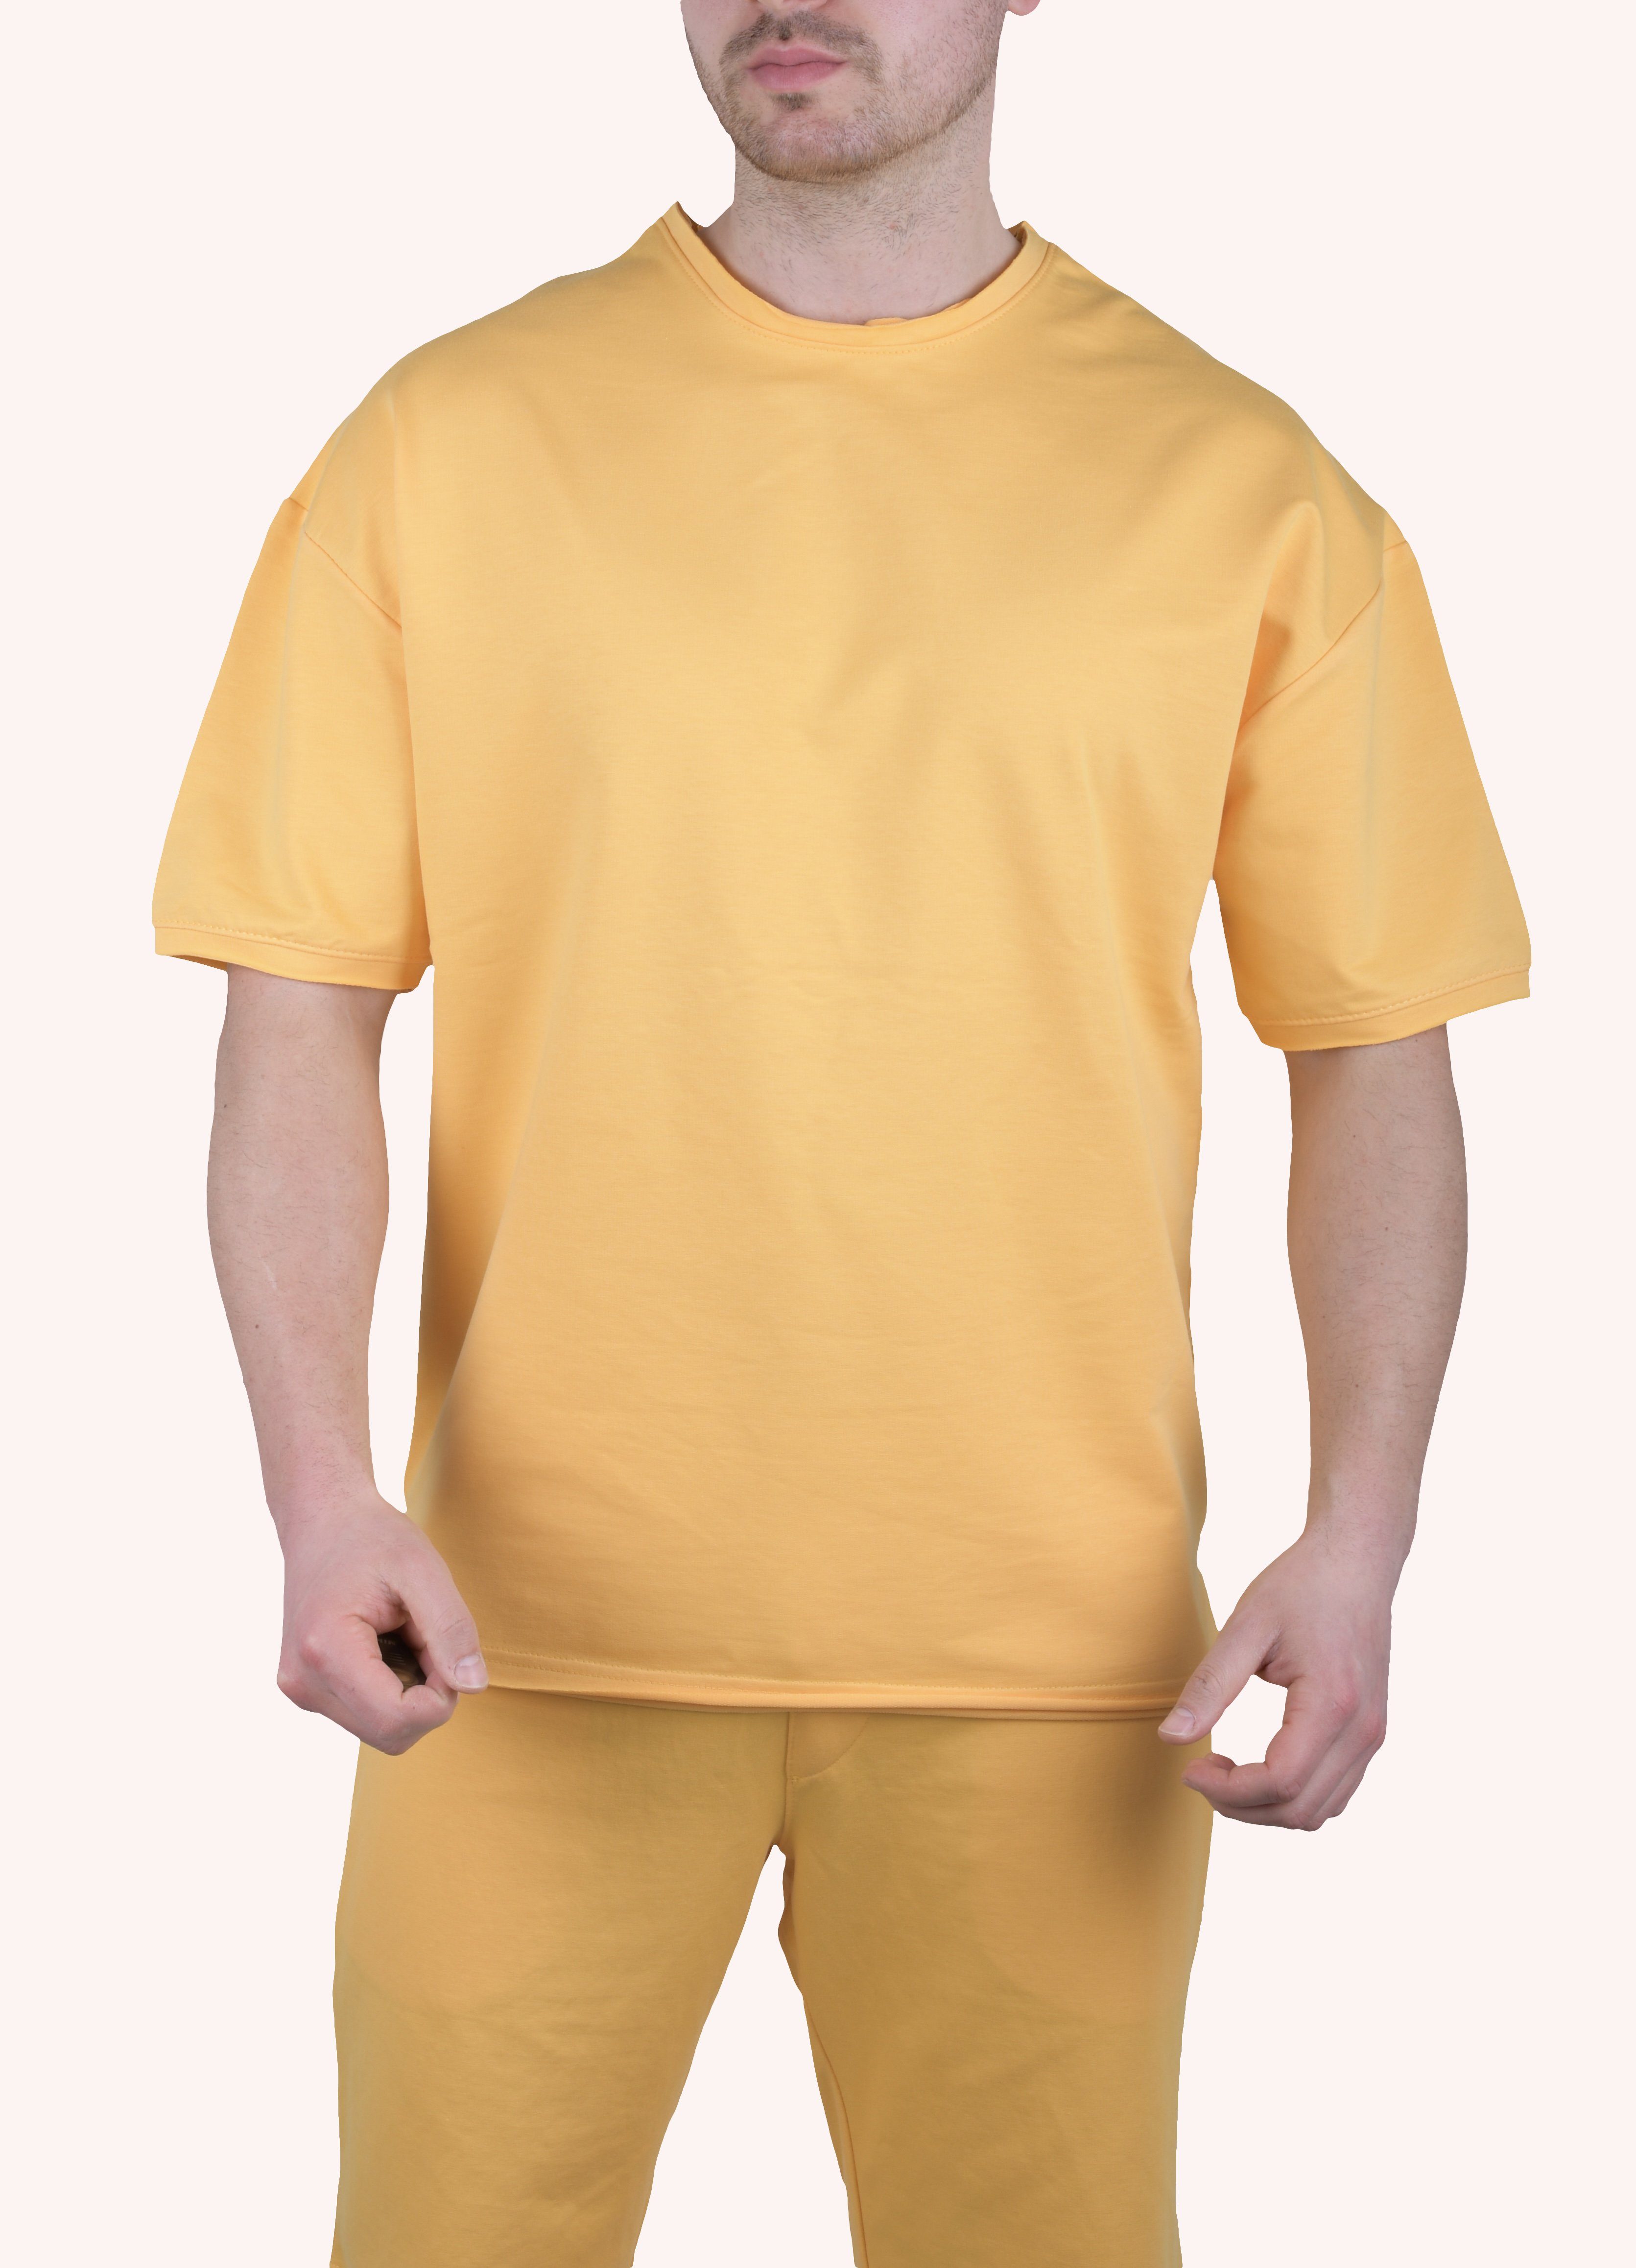 Megaman Jeans T-Shirt Herren T-Shirt Oversize M TS5011 Weiß Shirt Sommer Gelb Megaman